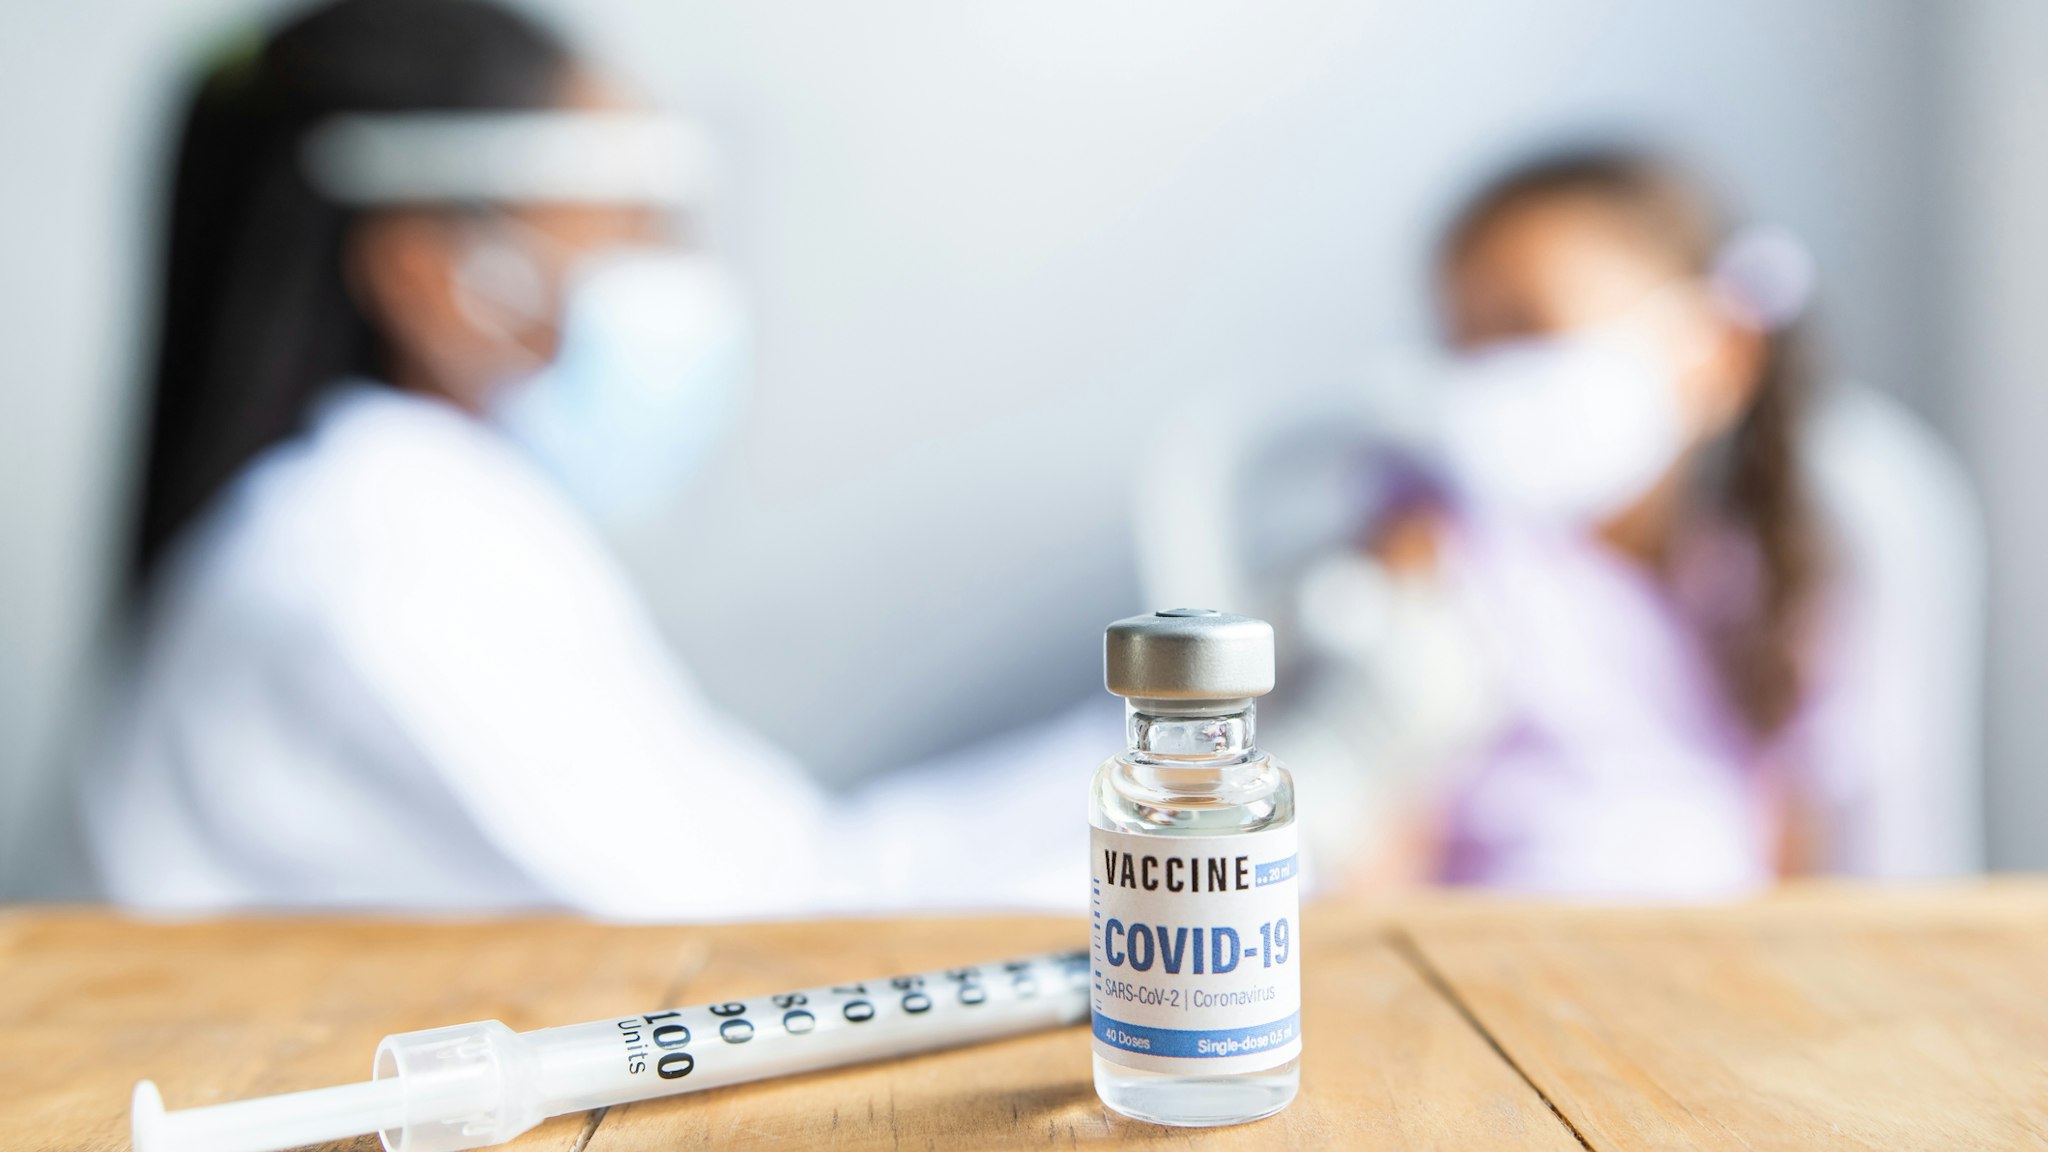 Covid-19 Vaccine - stock photo